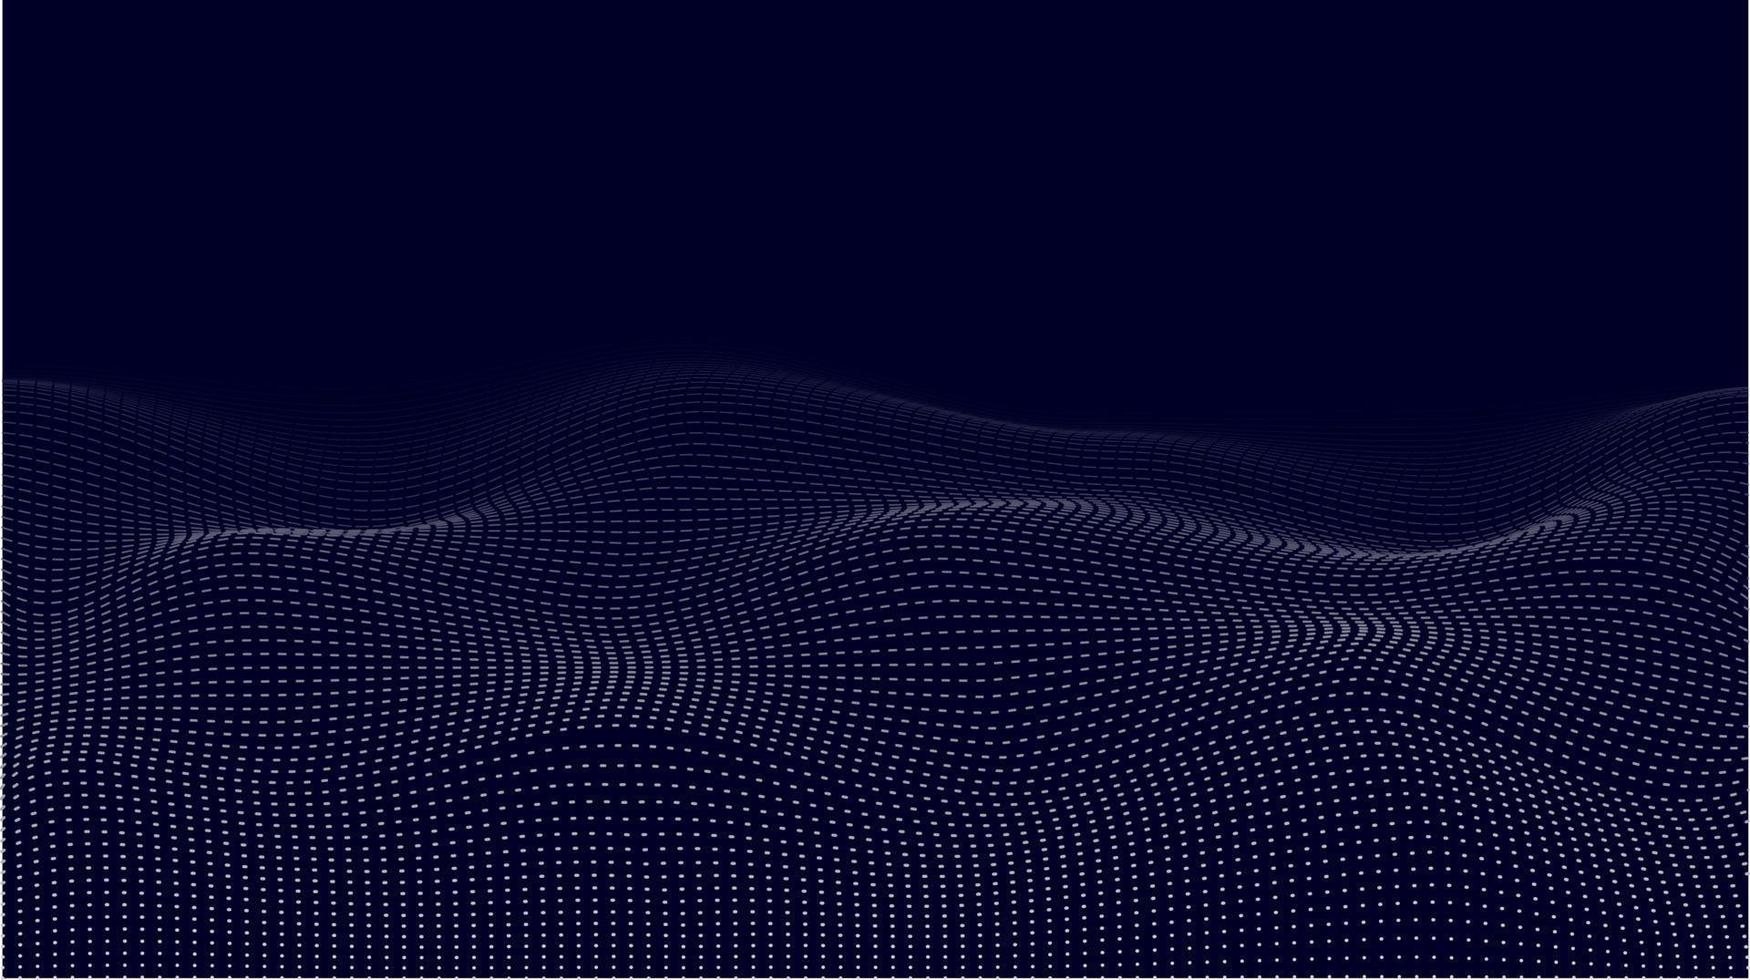 dynamisk partikelvågdesign. abstrakt bakgrund med vågiga partiklar. vektor illustration